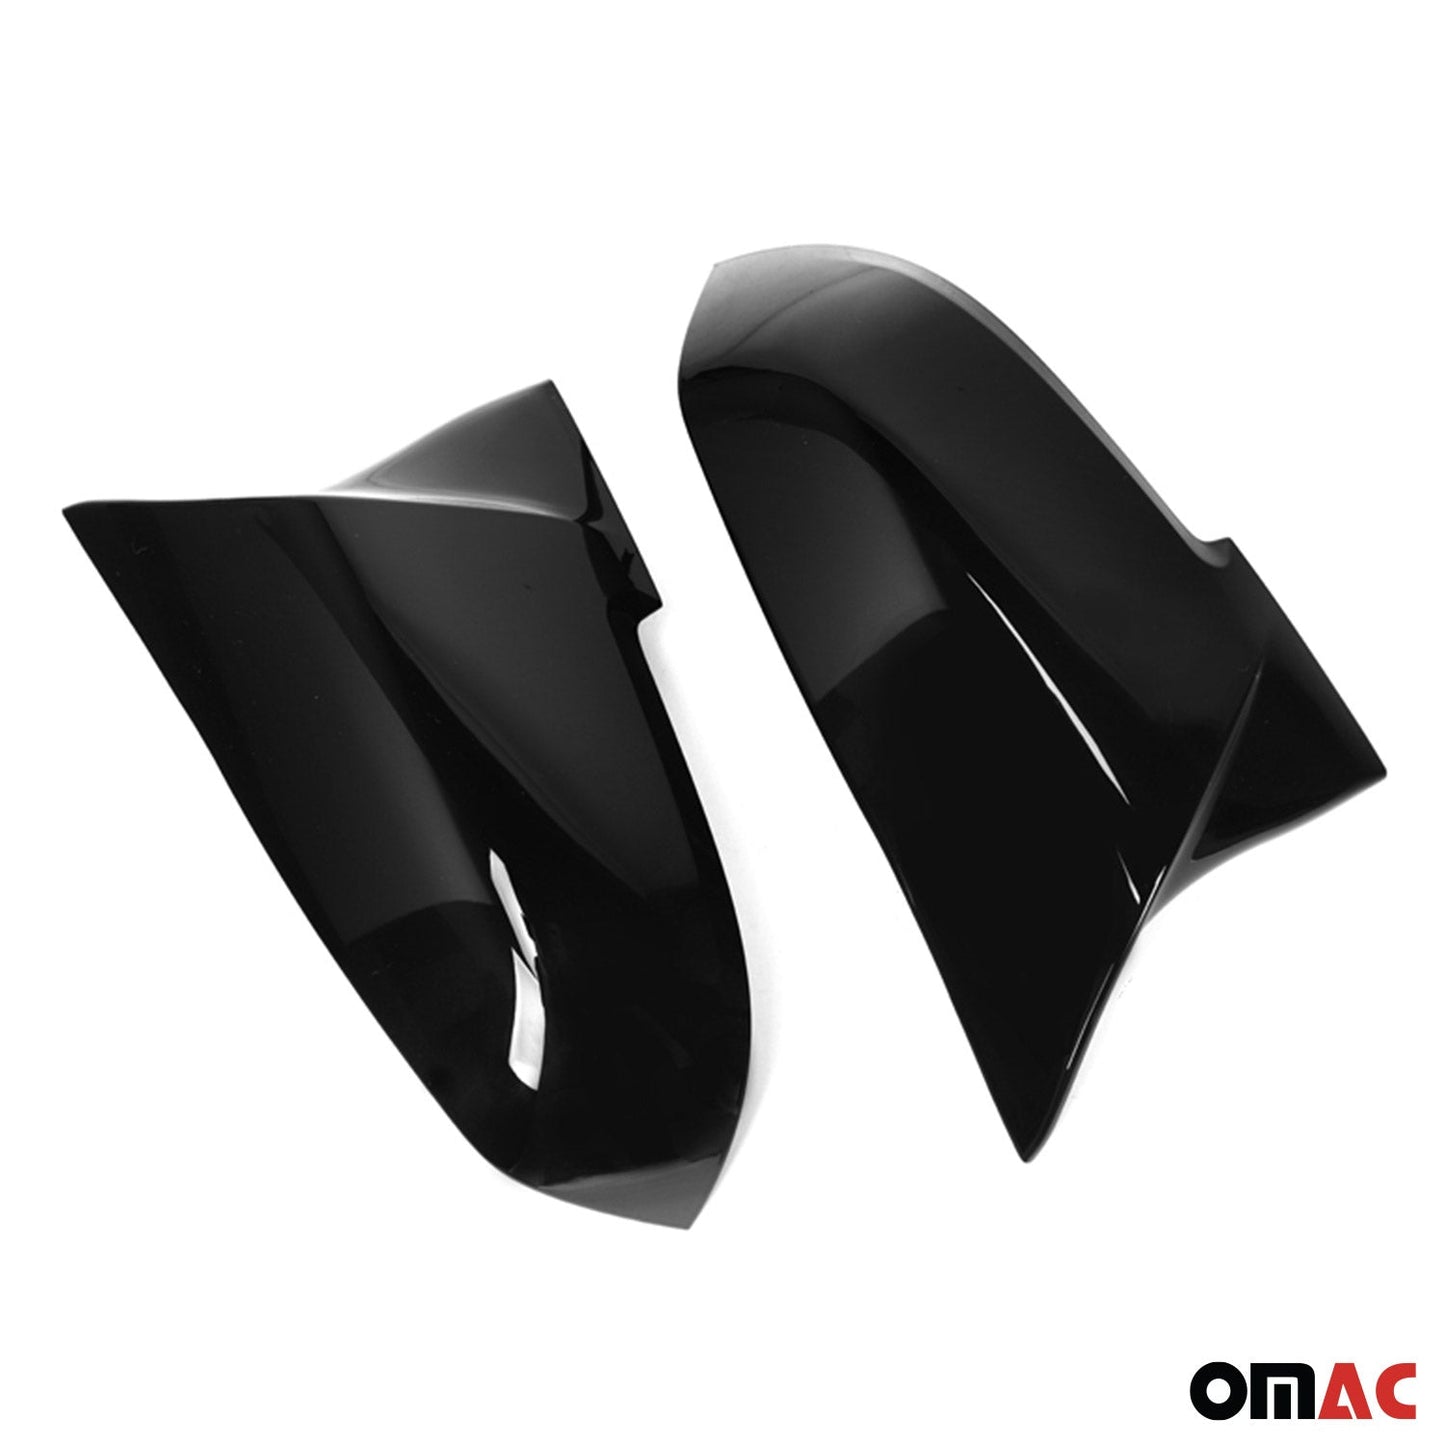 OMAC Side Mirror Cover Caps fits BMW 1 2 3 4 X1 M2 i3 F20 F22 F30 Gloss Black 1204P111MPB